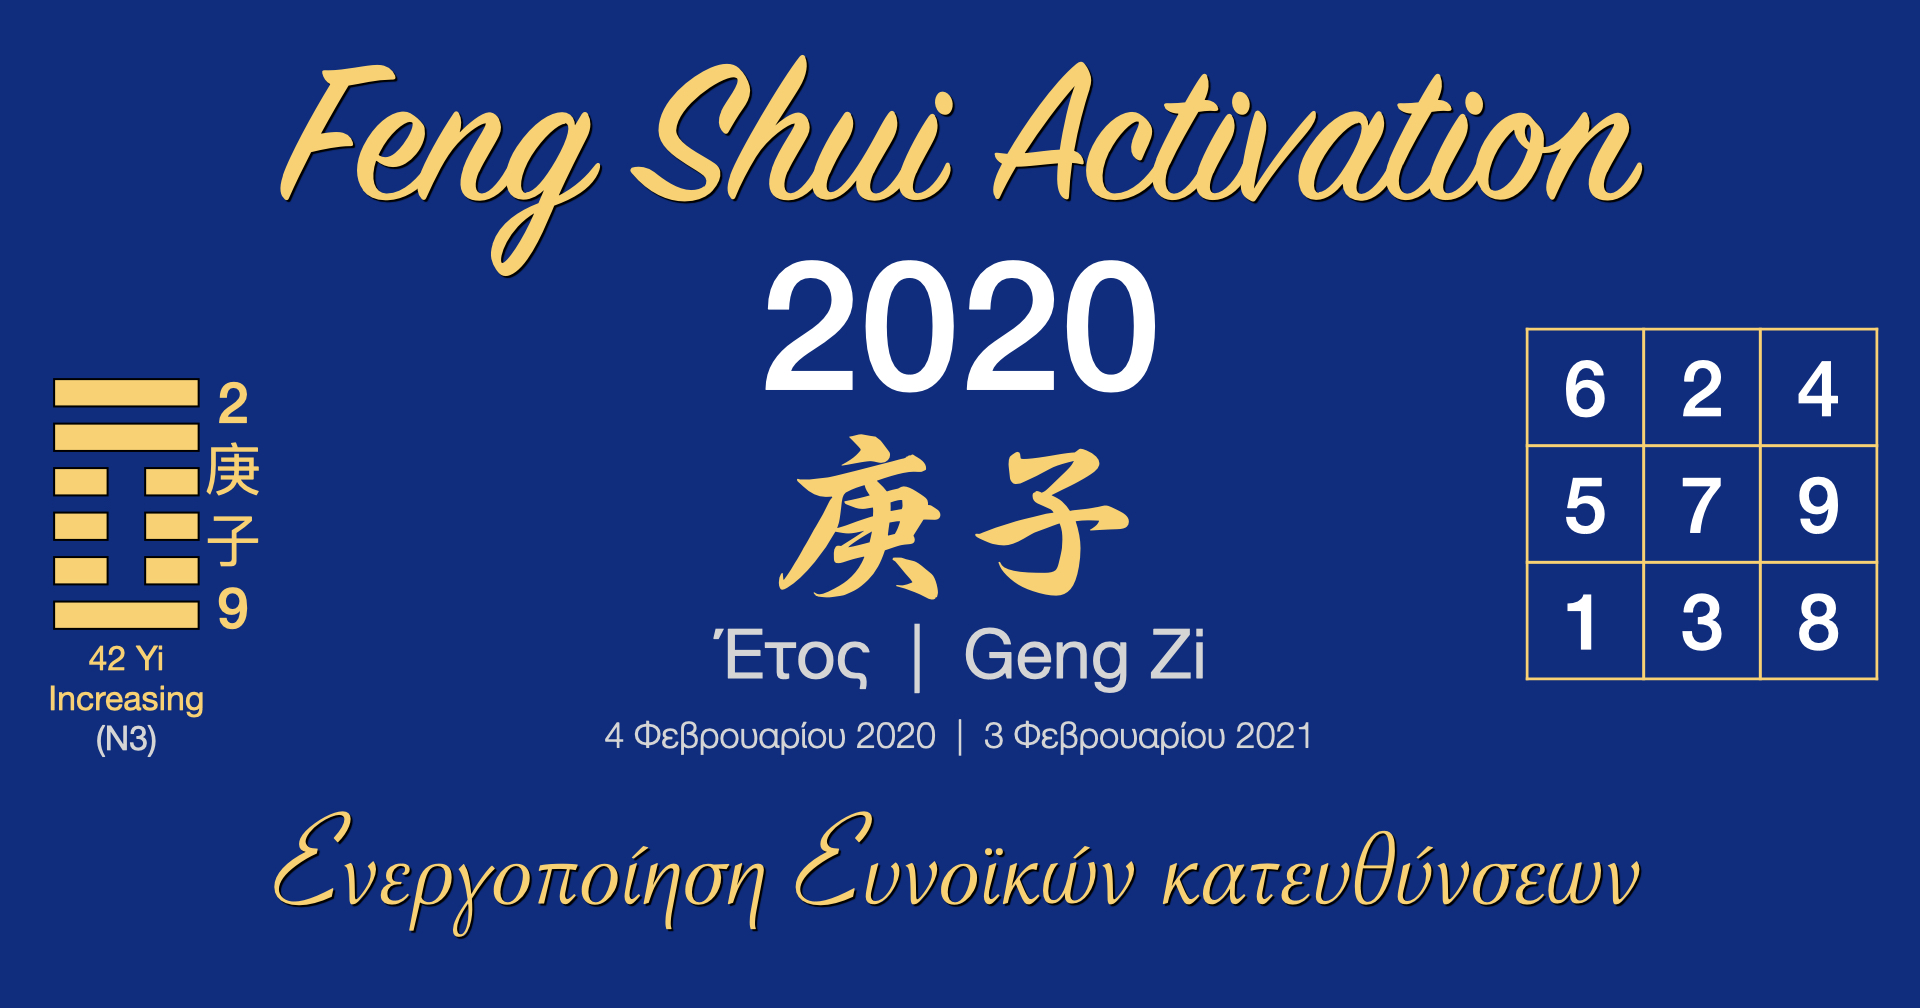 Ενεργοποίηση Άστρων Feng Shui 2020